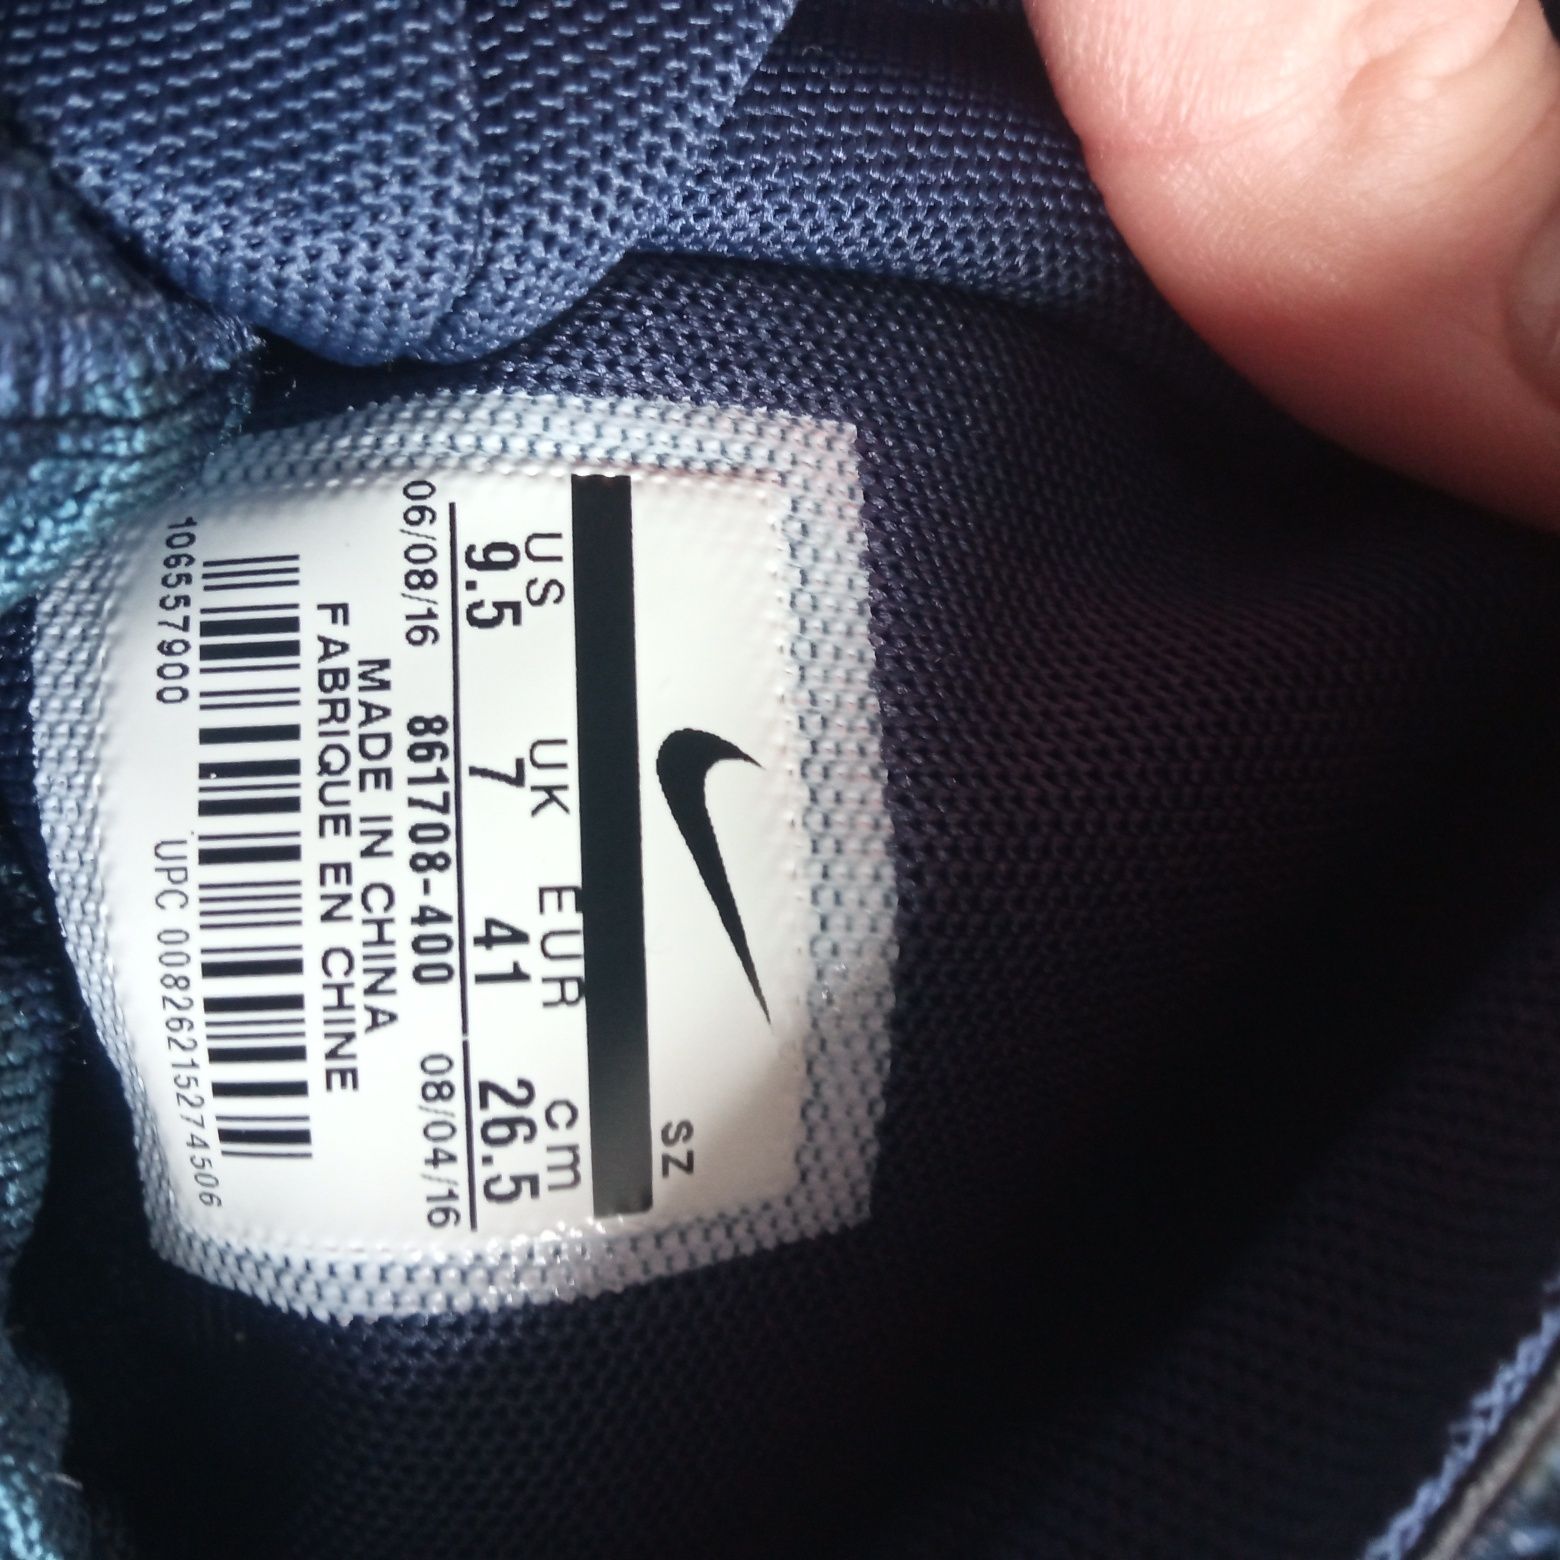 Жіночі кросівки Nike